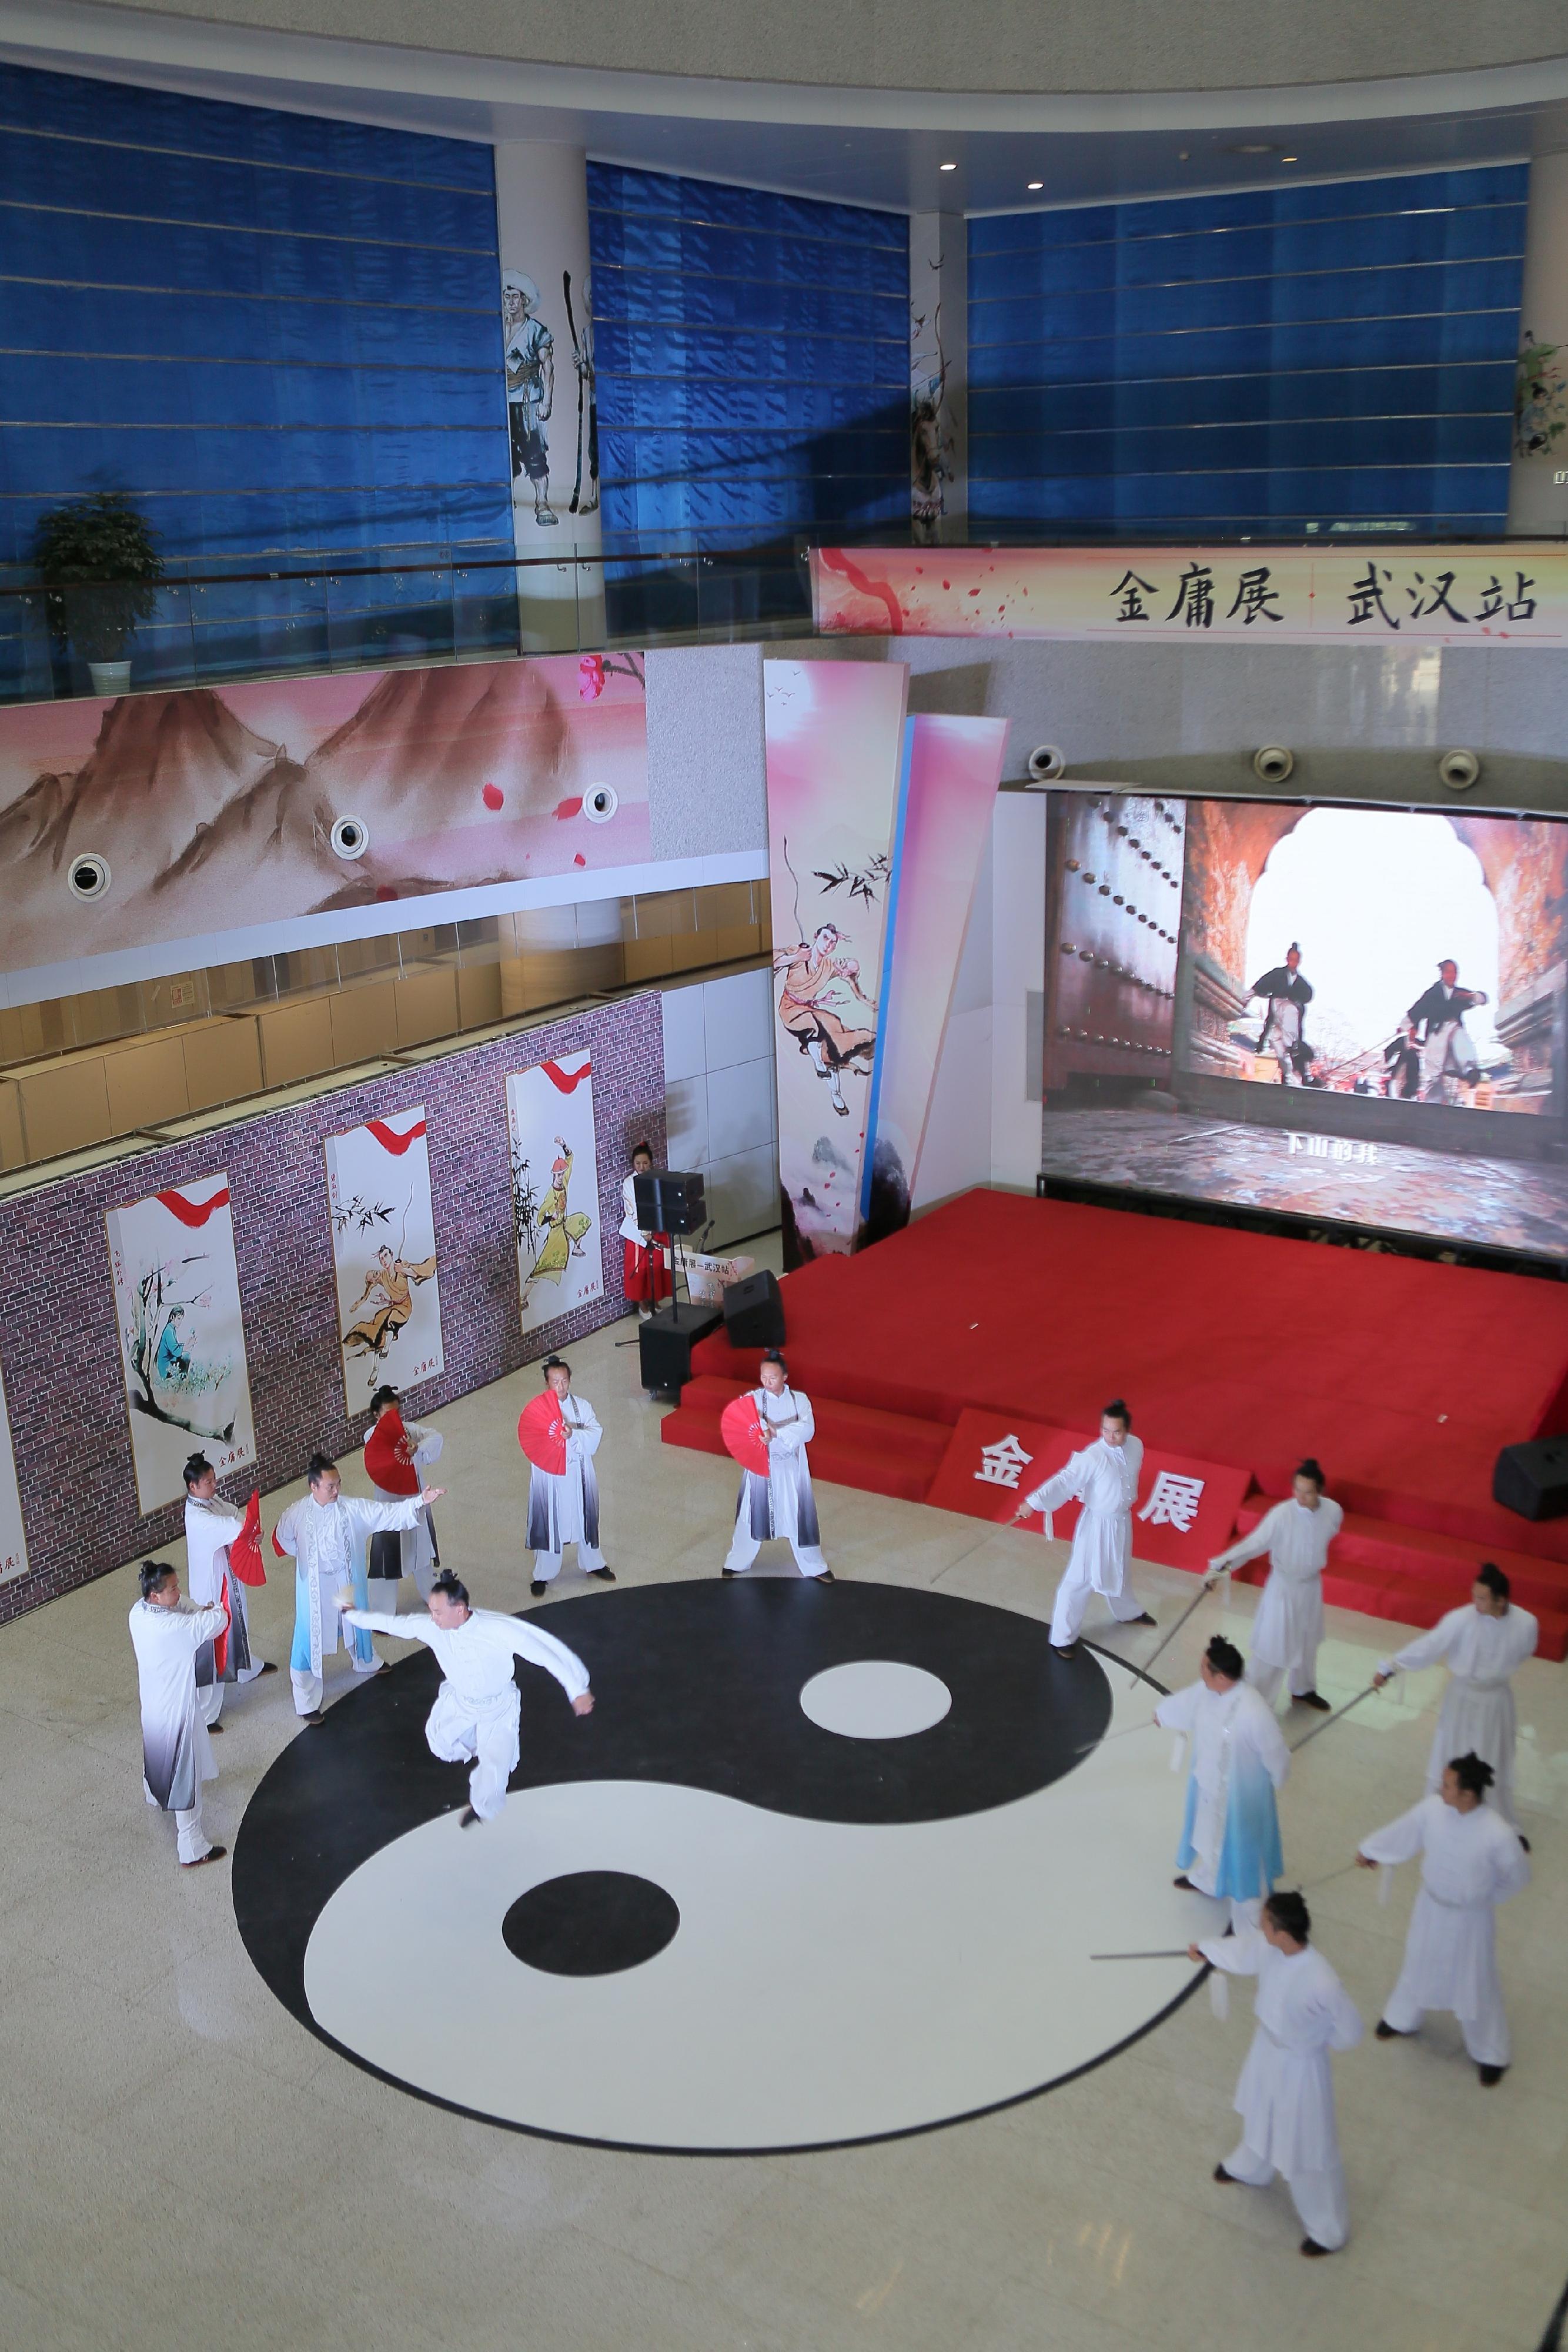 以著名報人、作家查良鏞博士（筆名金庸）為主題的展覽—「金庸展」今日（九月九日）在武漢湖北省圖書館正式揭幕。圖示開幕式中的太極功夫表演。